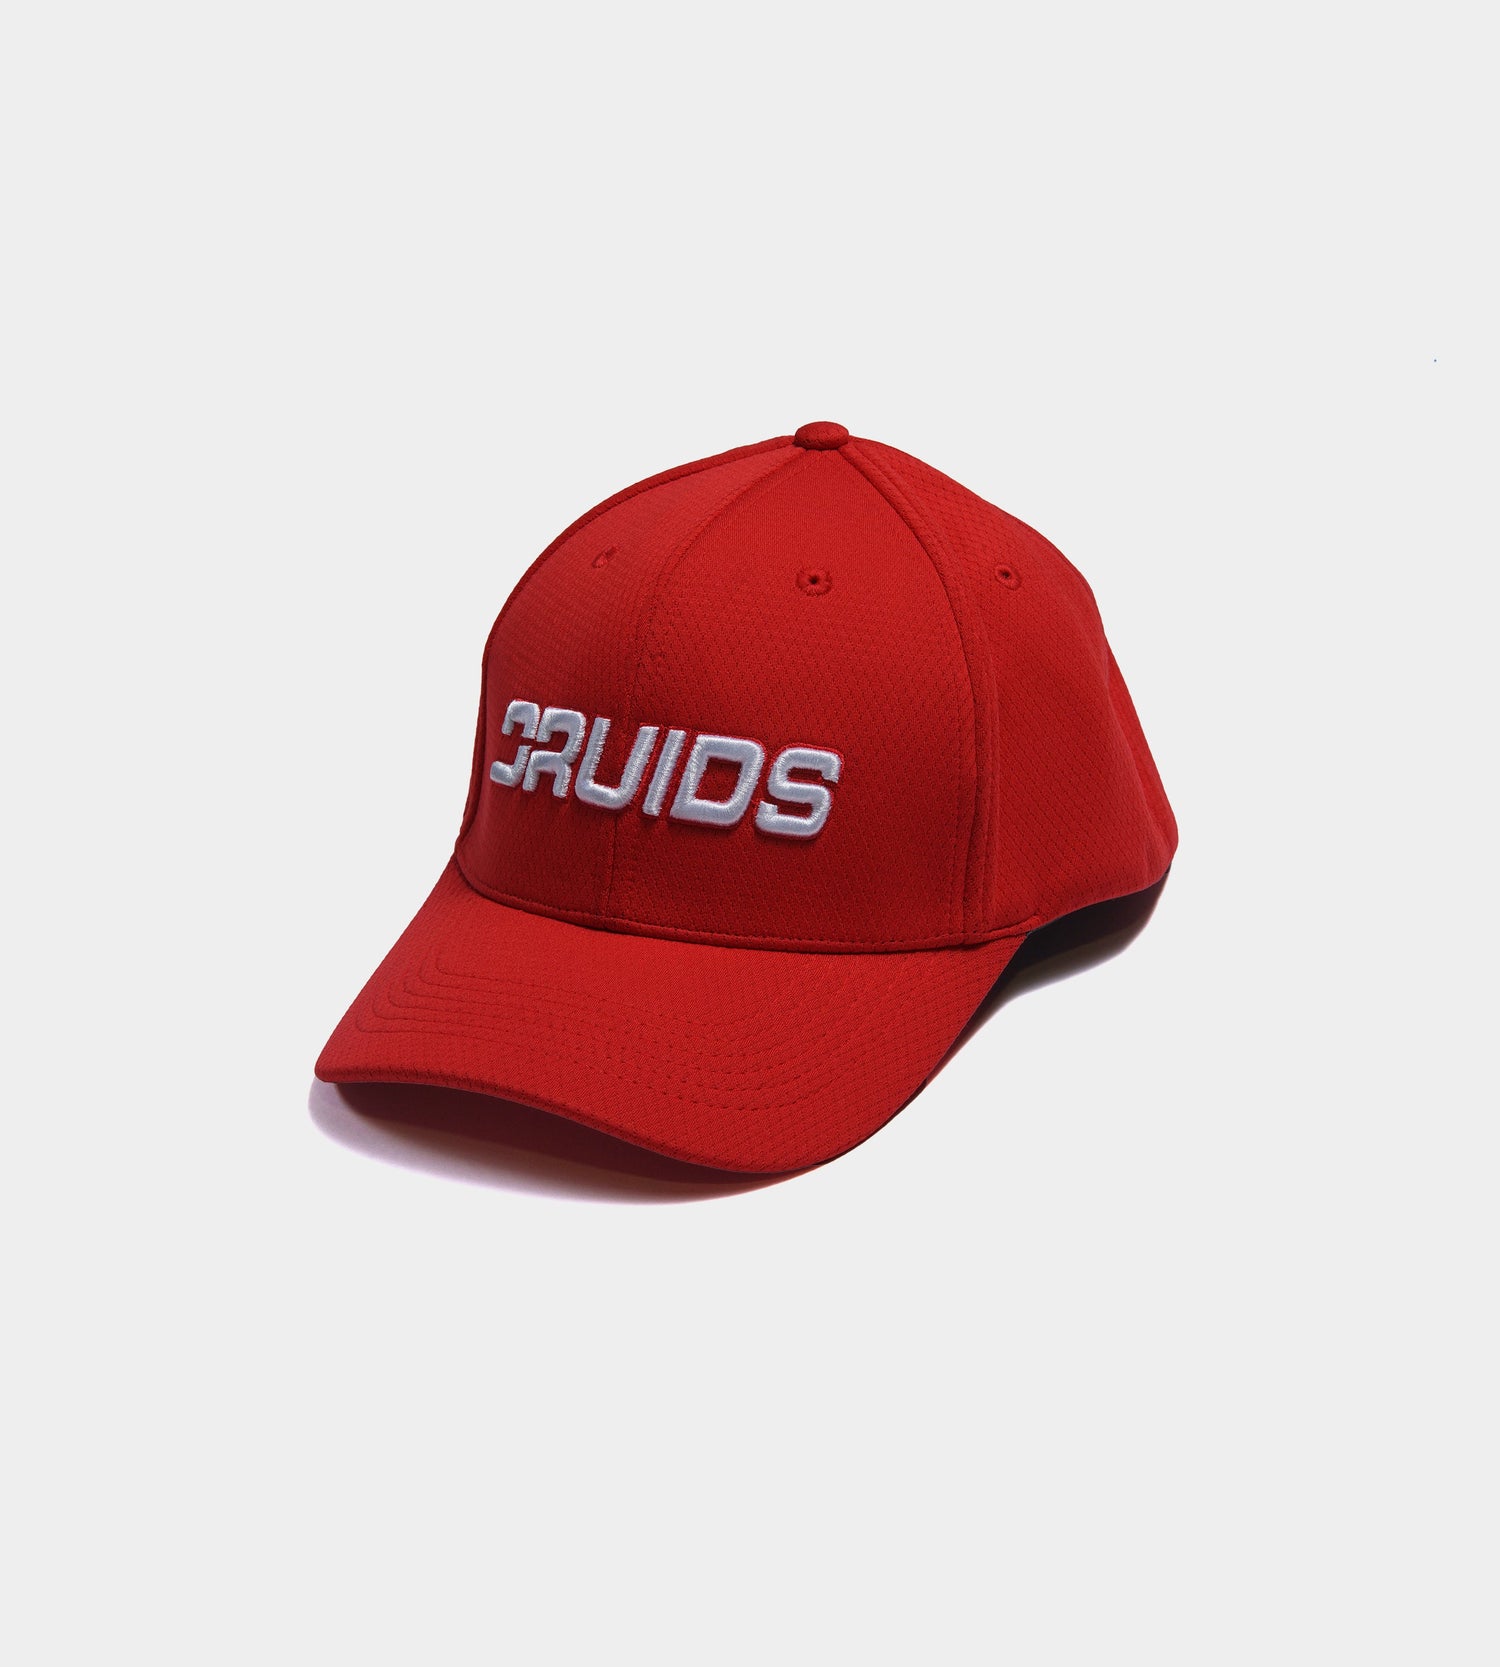 DRUIDS PROTECH TOUR CAP - RED - DRUIDS